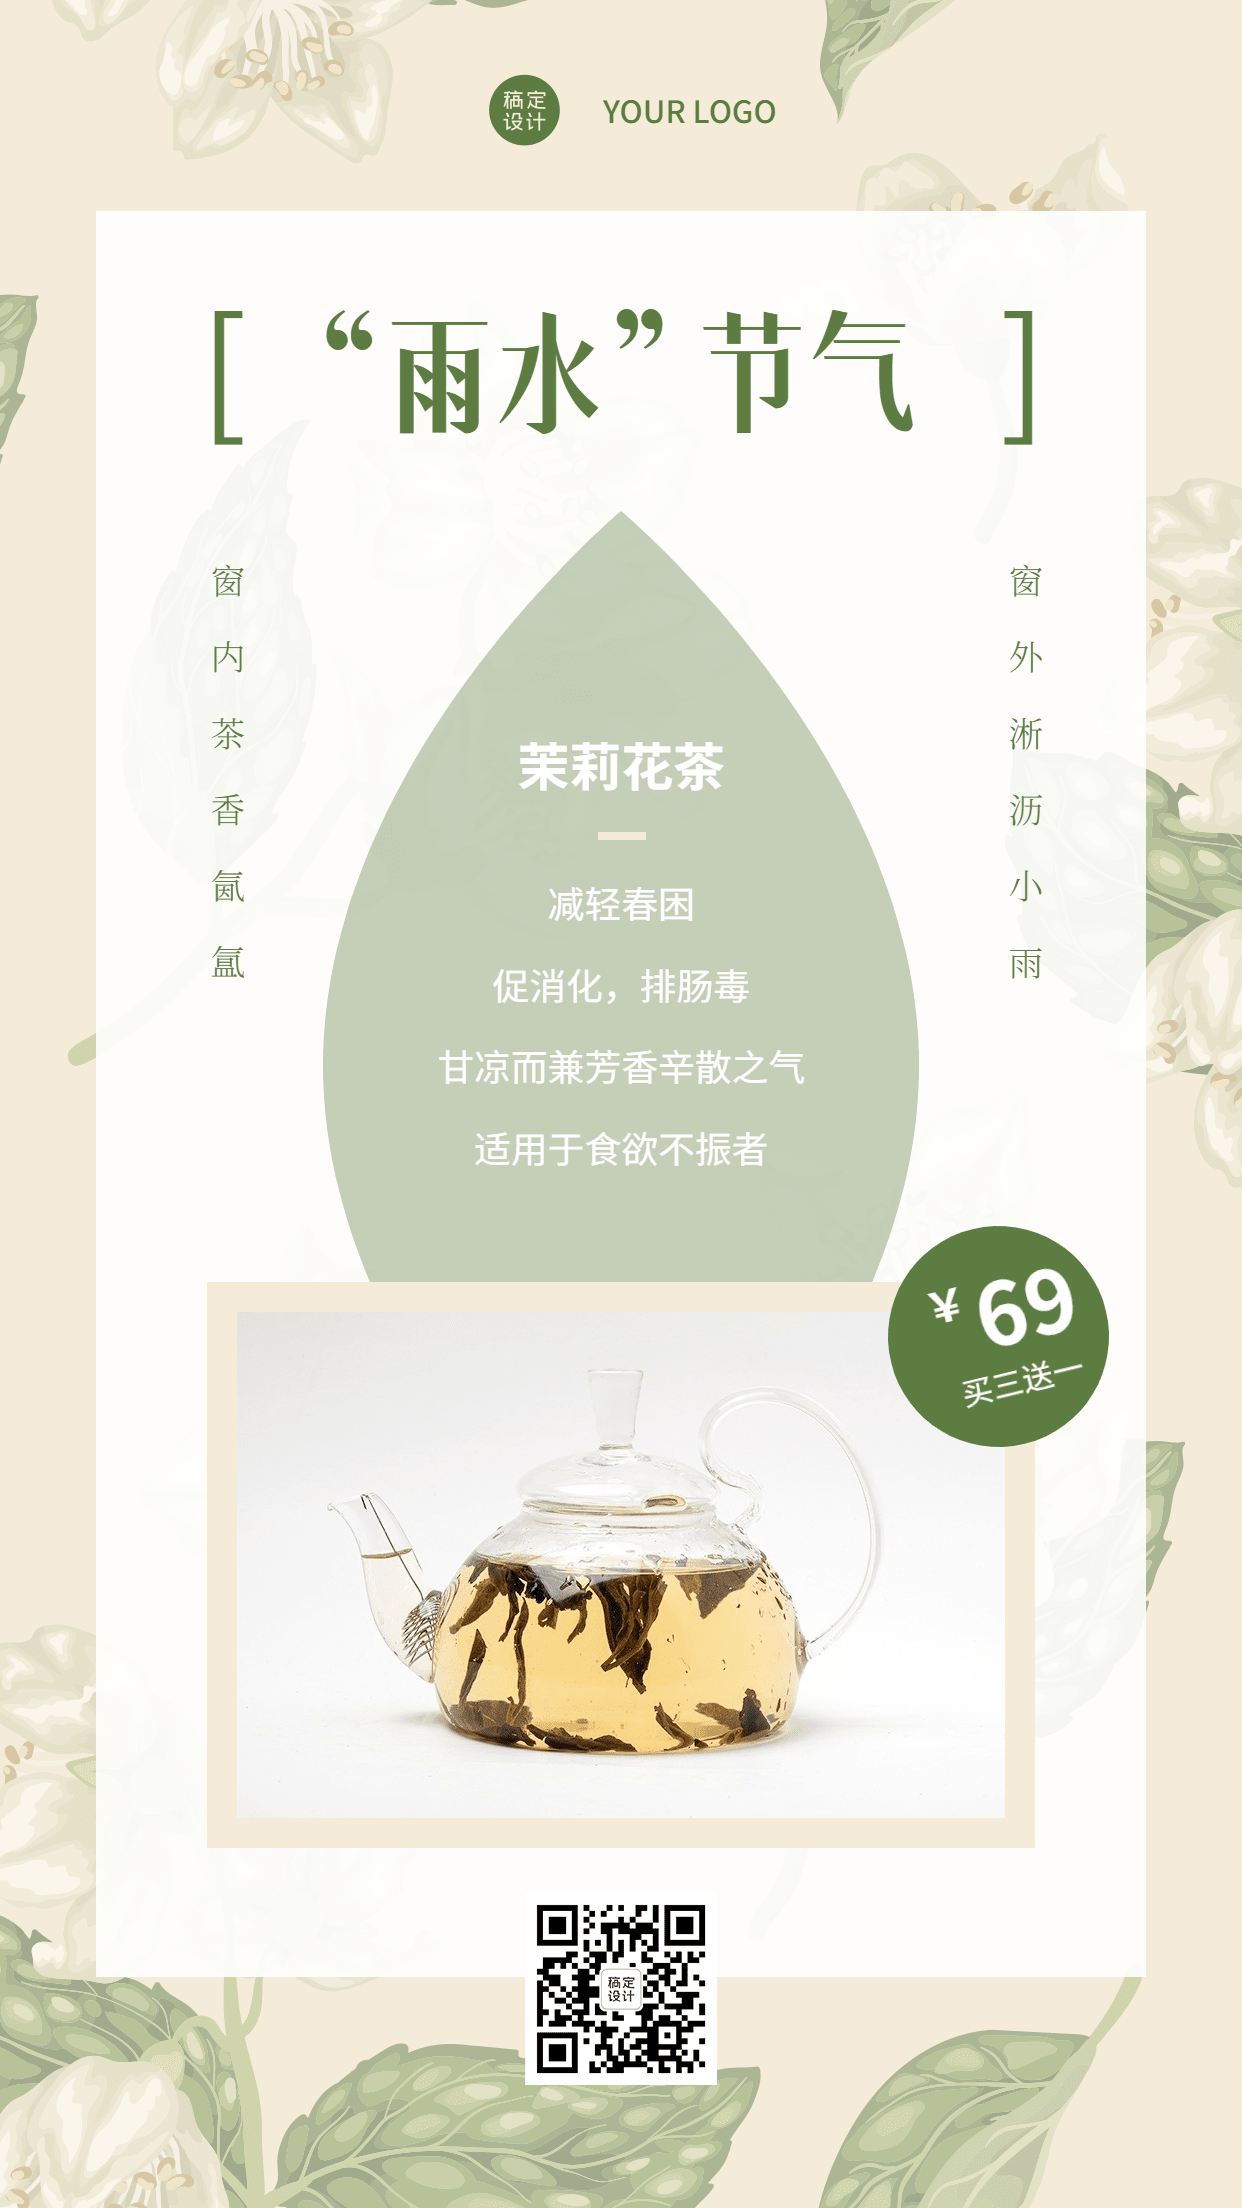 雨水茉莉花茶产品营销展示手机海报